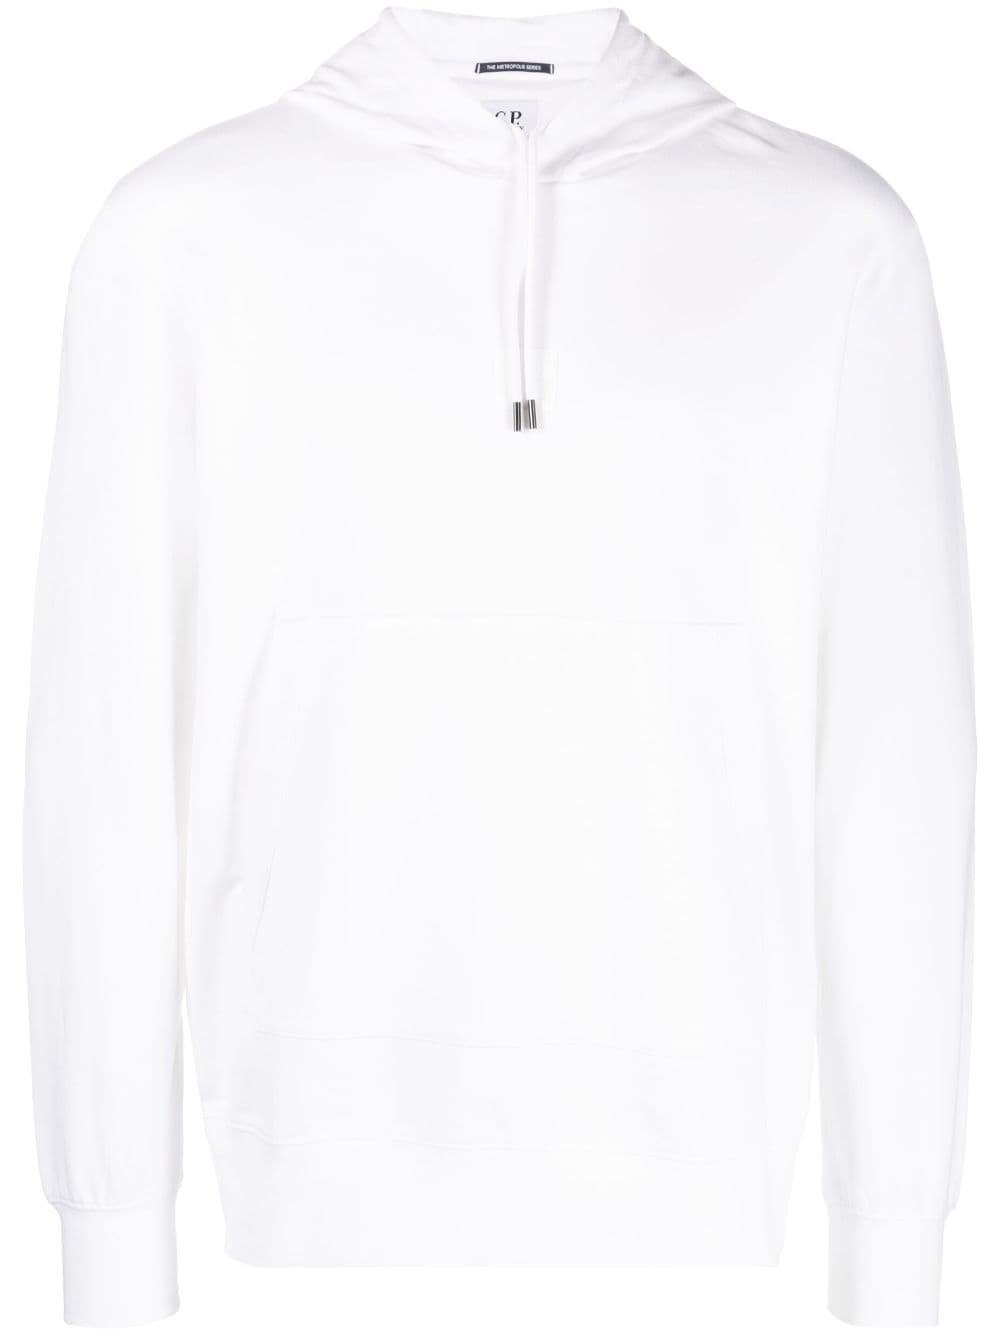 hoodie bianca product